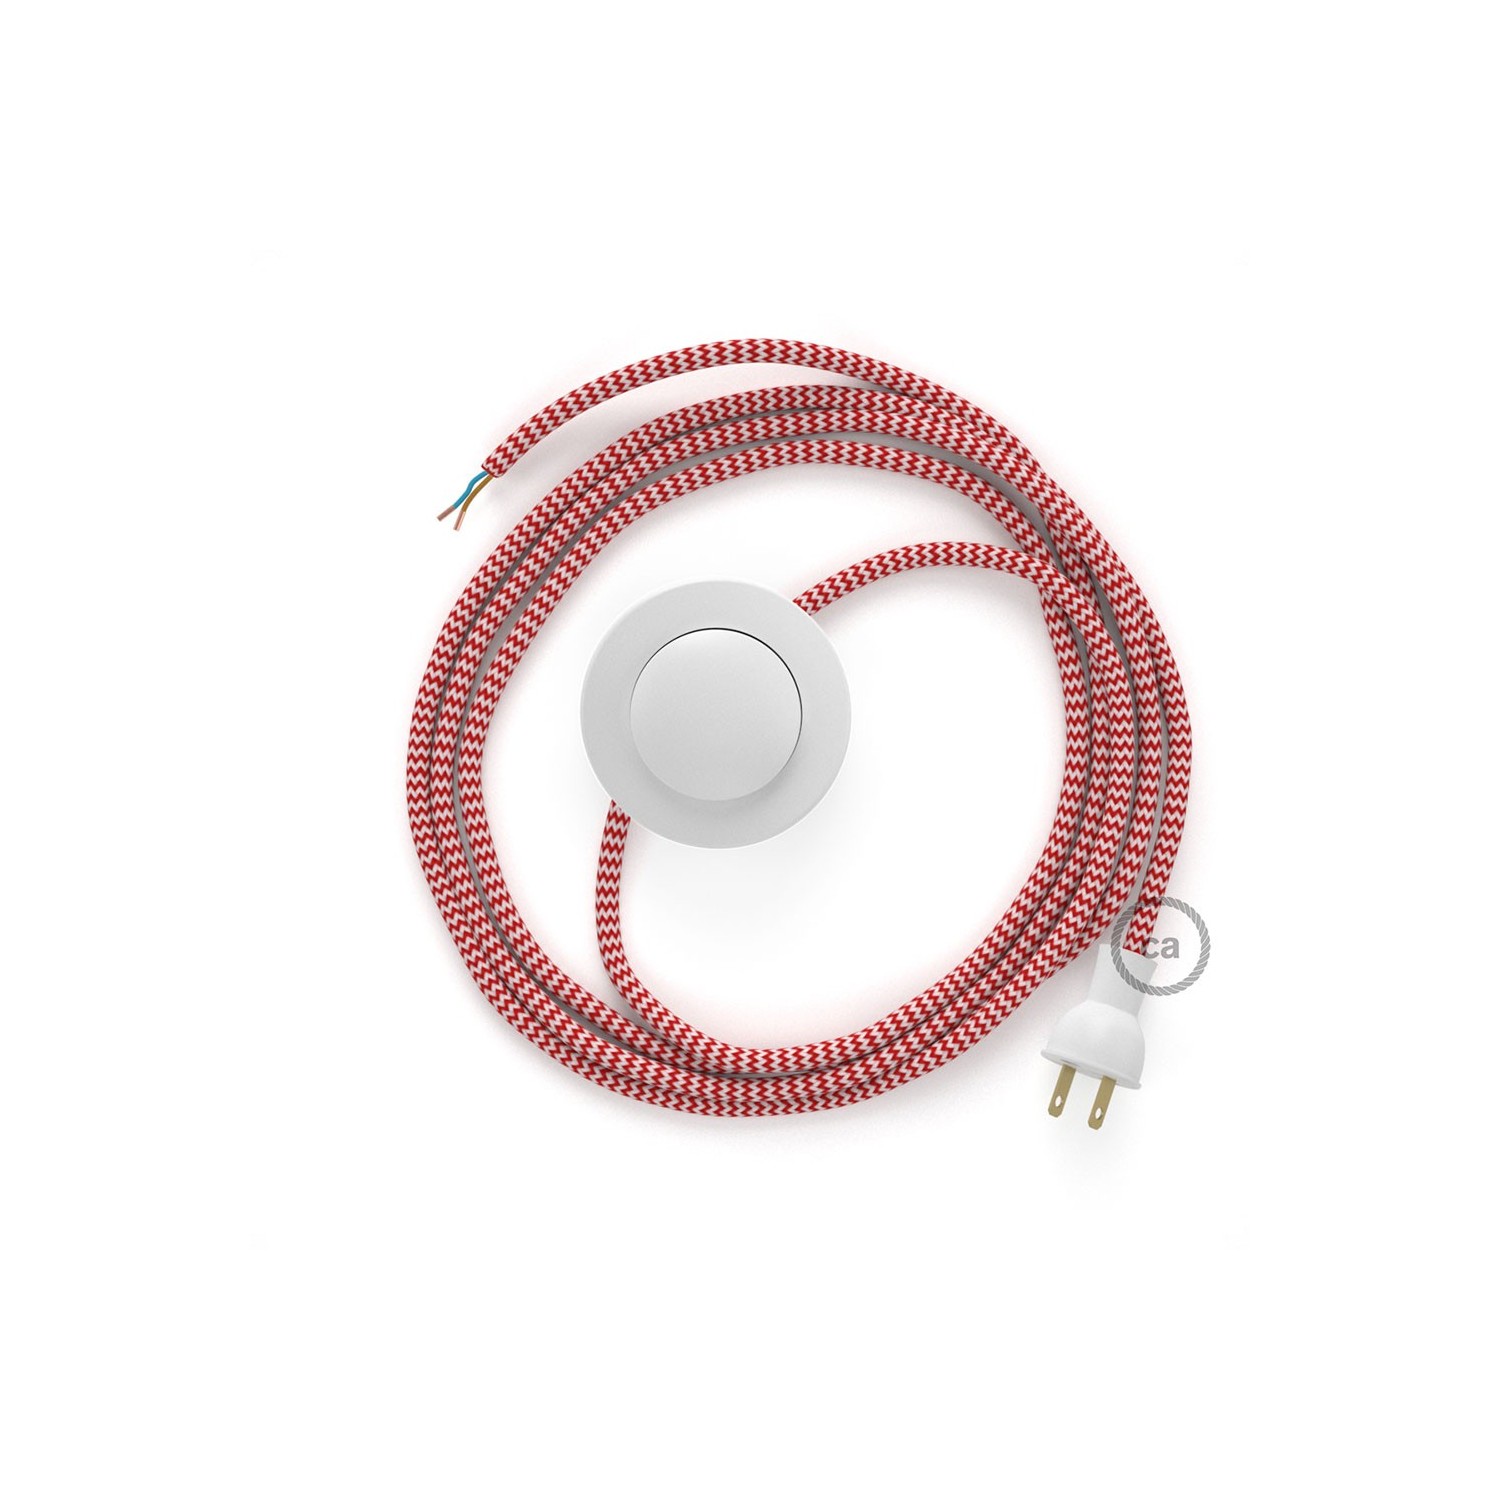 Cableado para lámpara de piso, cable RZ09 Rayón ZigZag Blanco Rojo 3 m. Elige tu el color de la clavija y del interruptor!